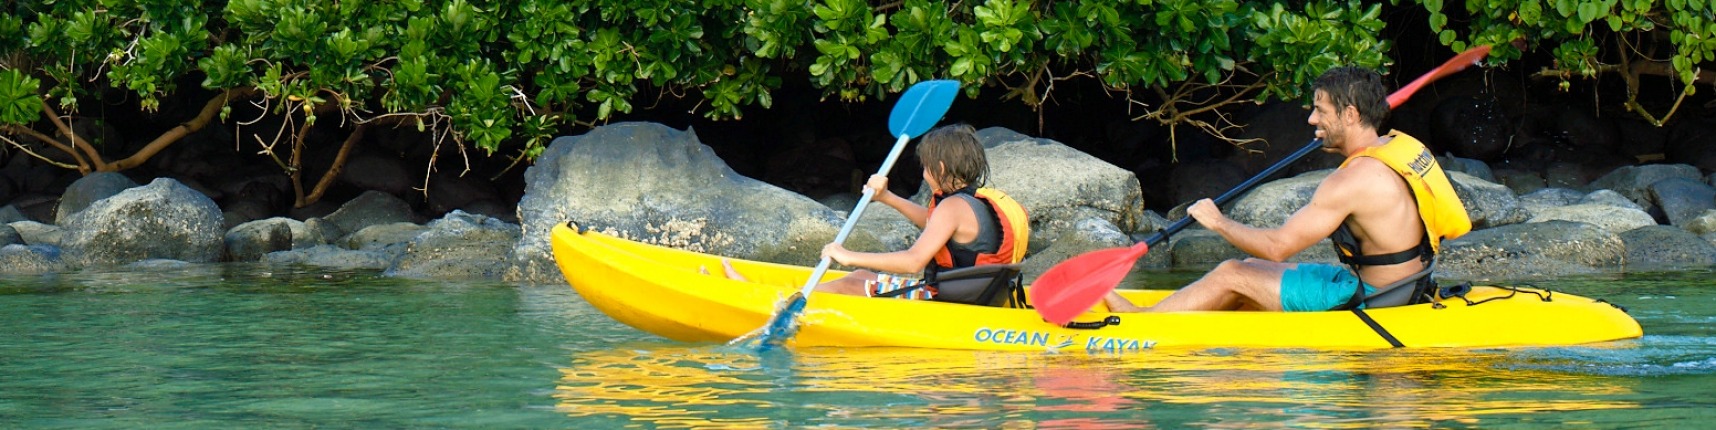 Fiji, kayaking